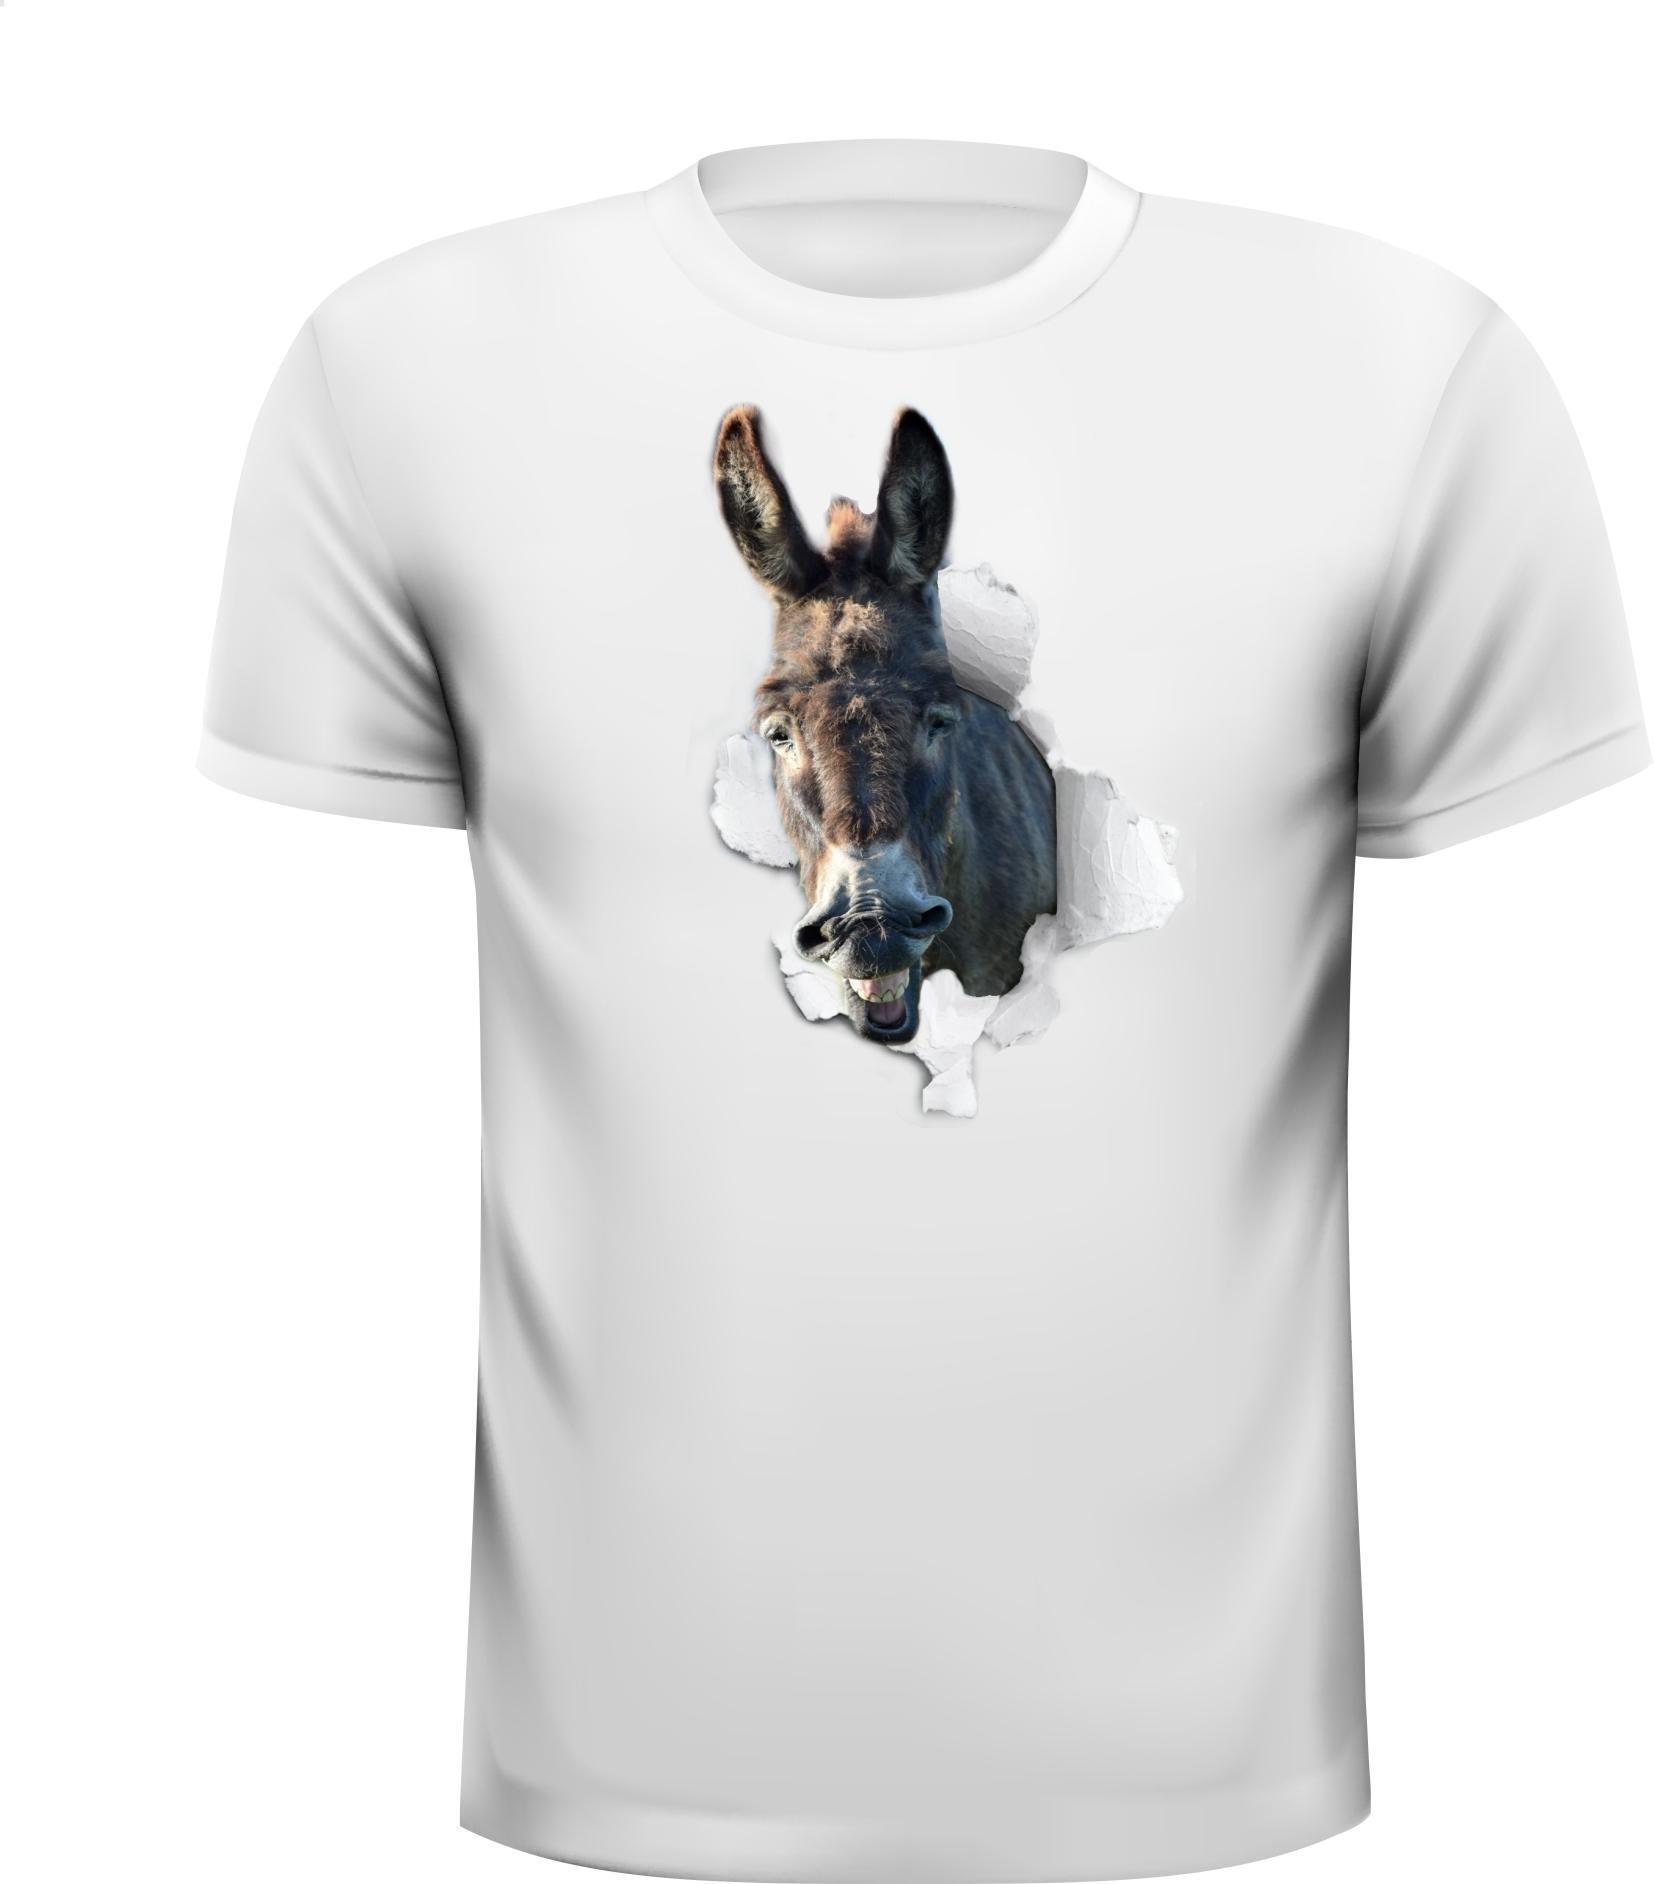 Grappig T-shirt Ezel uit T-shirt kruipt leuk humor dier gek